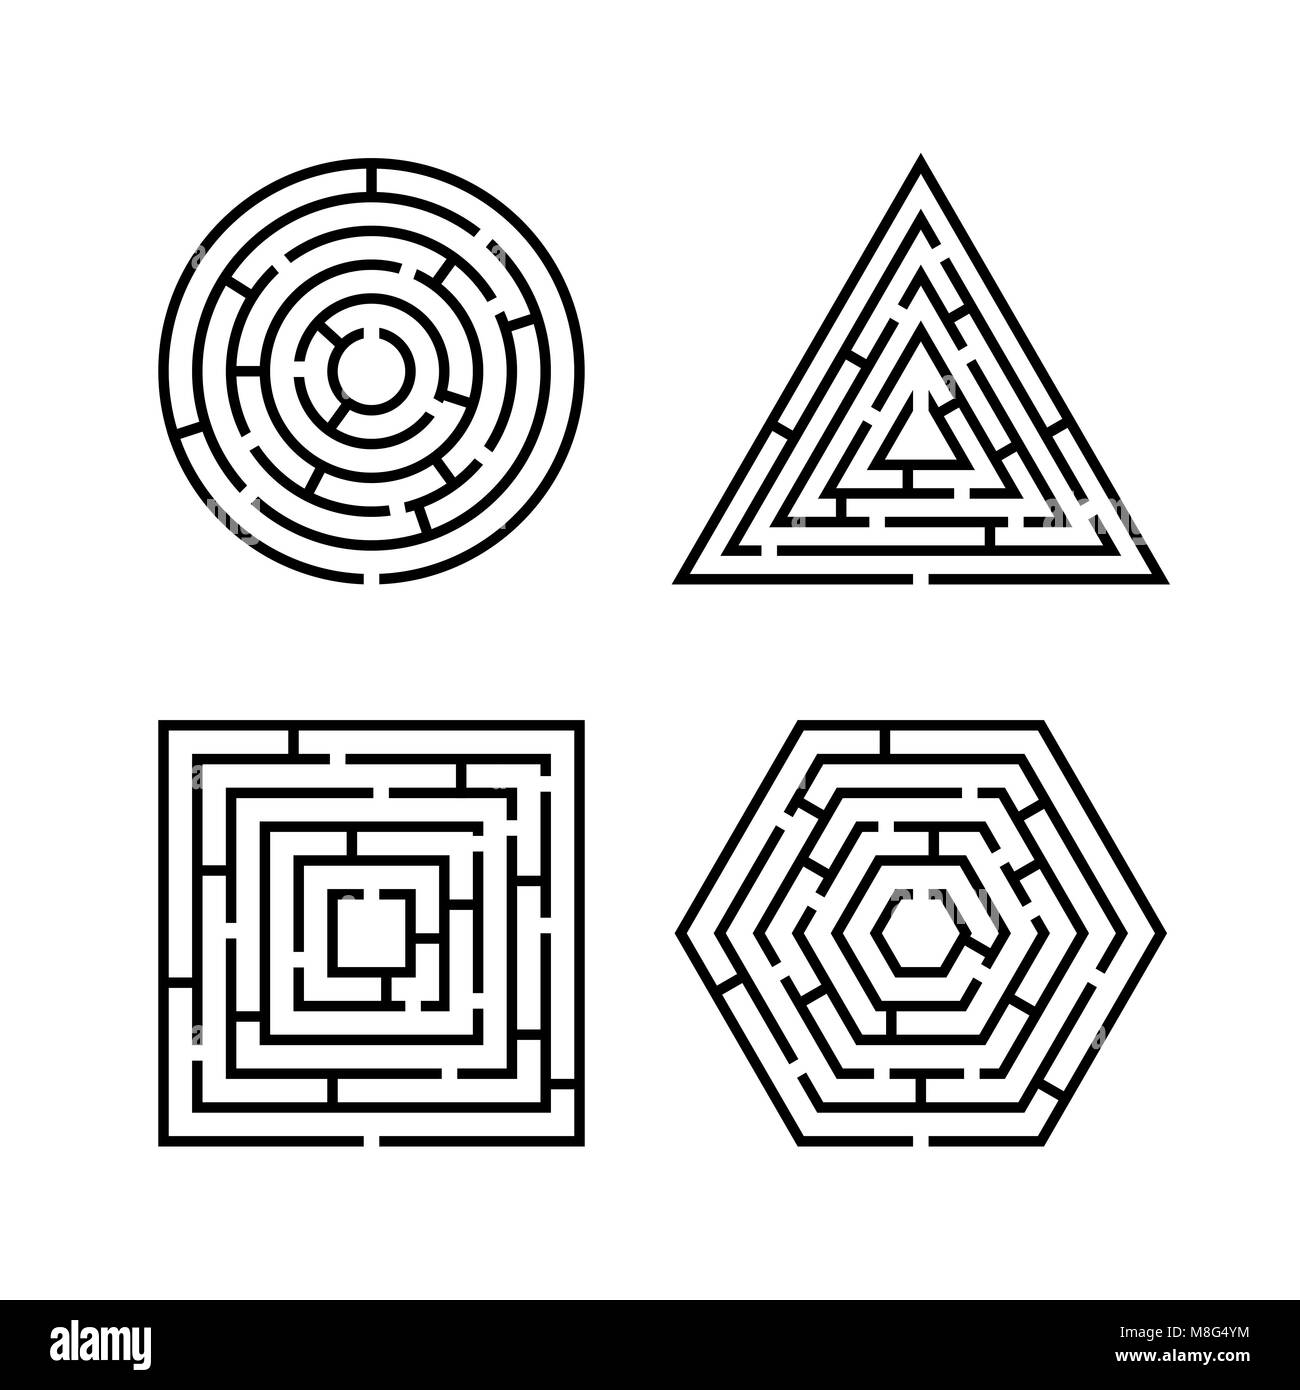 Satz von Labyrinth unterschiedliche Formen für Spiel. Labyrinth quadratisch, rund, sechskant und Dreieck Puzzle Rätsel Logik Spiel Konzept. Unternehmen anmelden. Vektor Lllustrat Stock Vektor